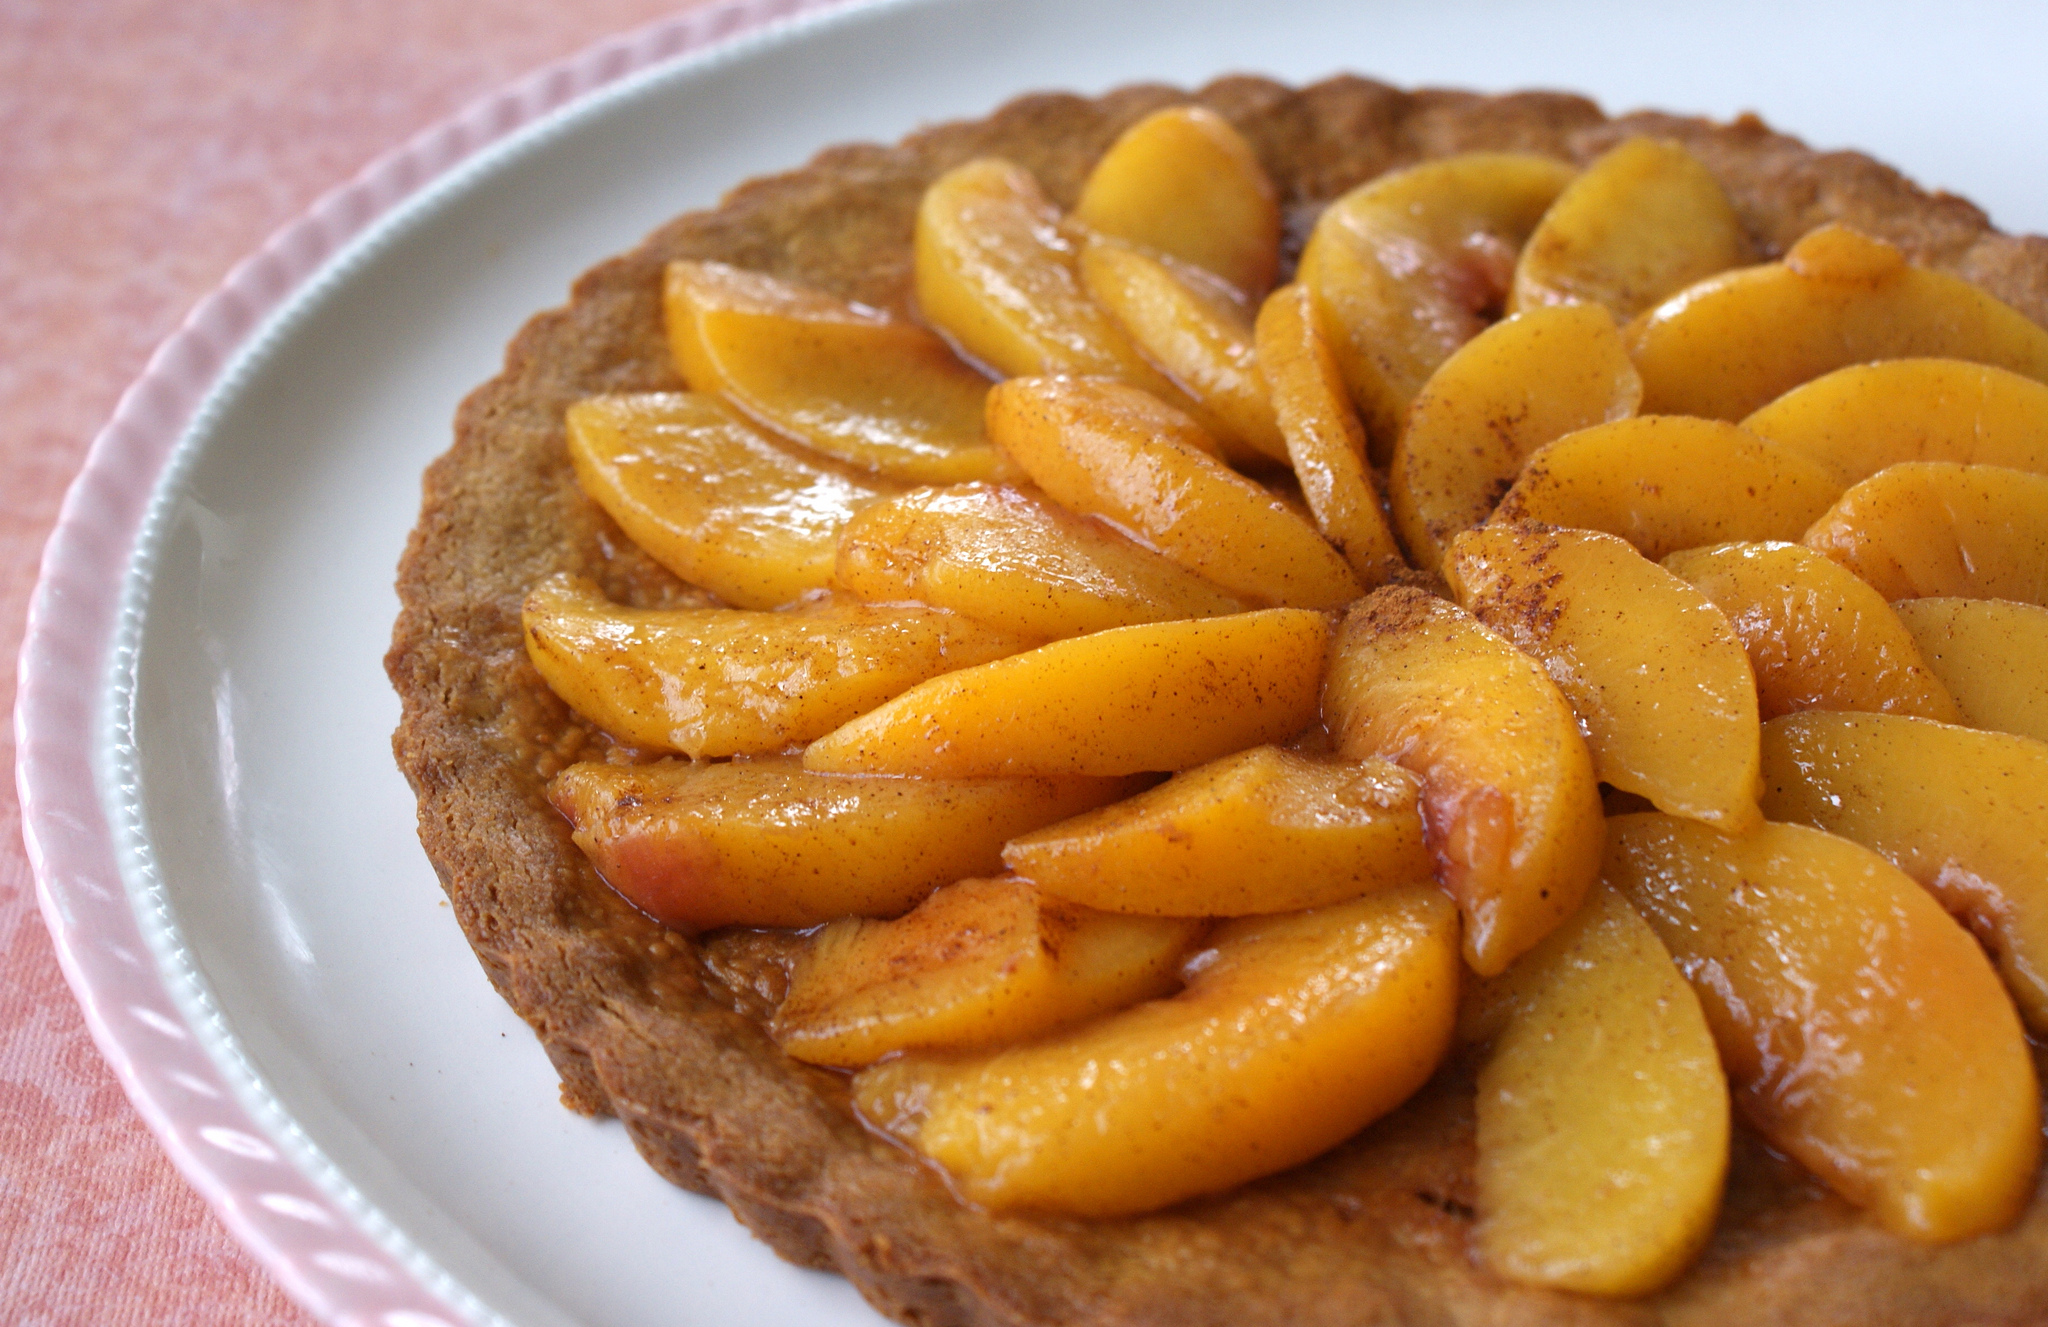 Homemade peach tart on a white plate